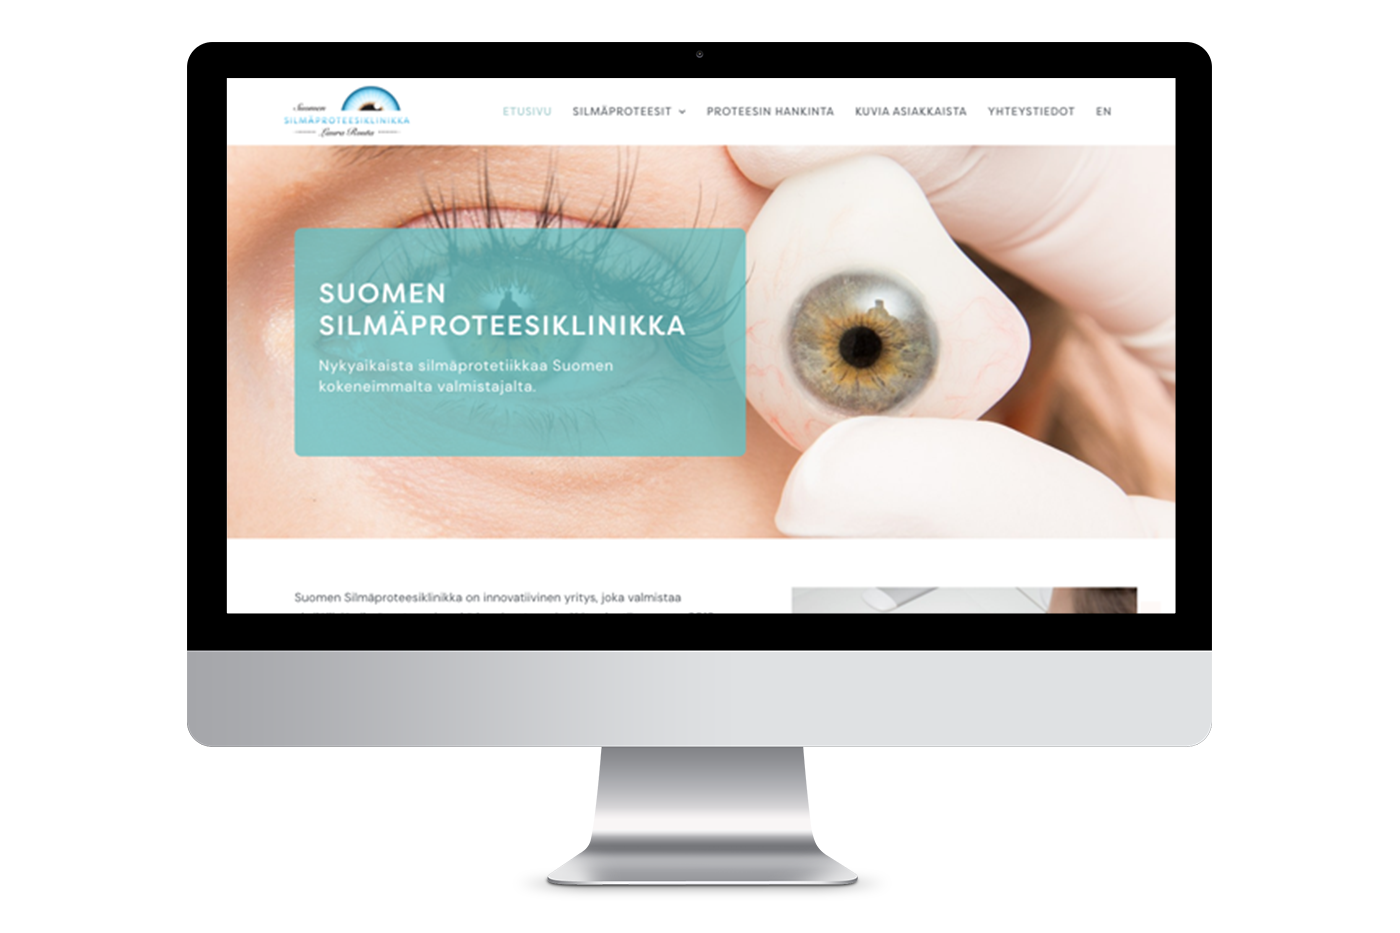 Kansikuva silmäproteesiklinikan verkkosivuista